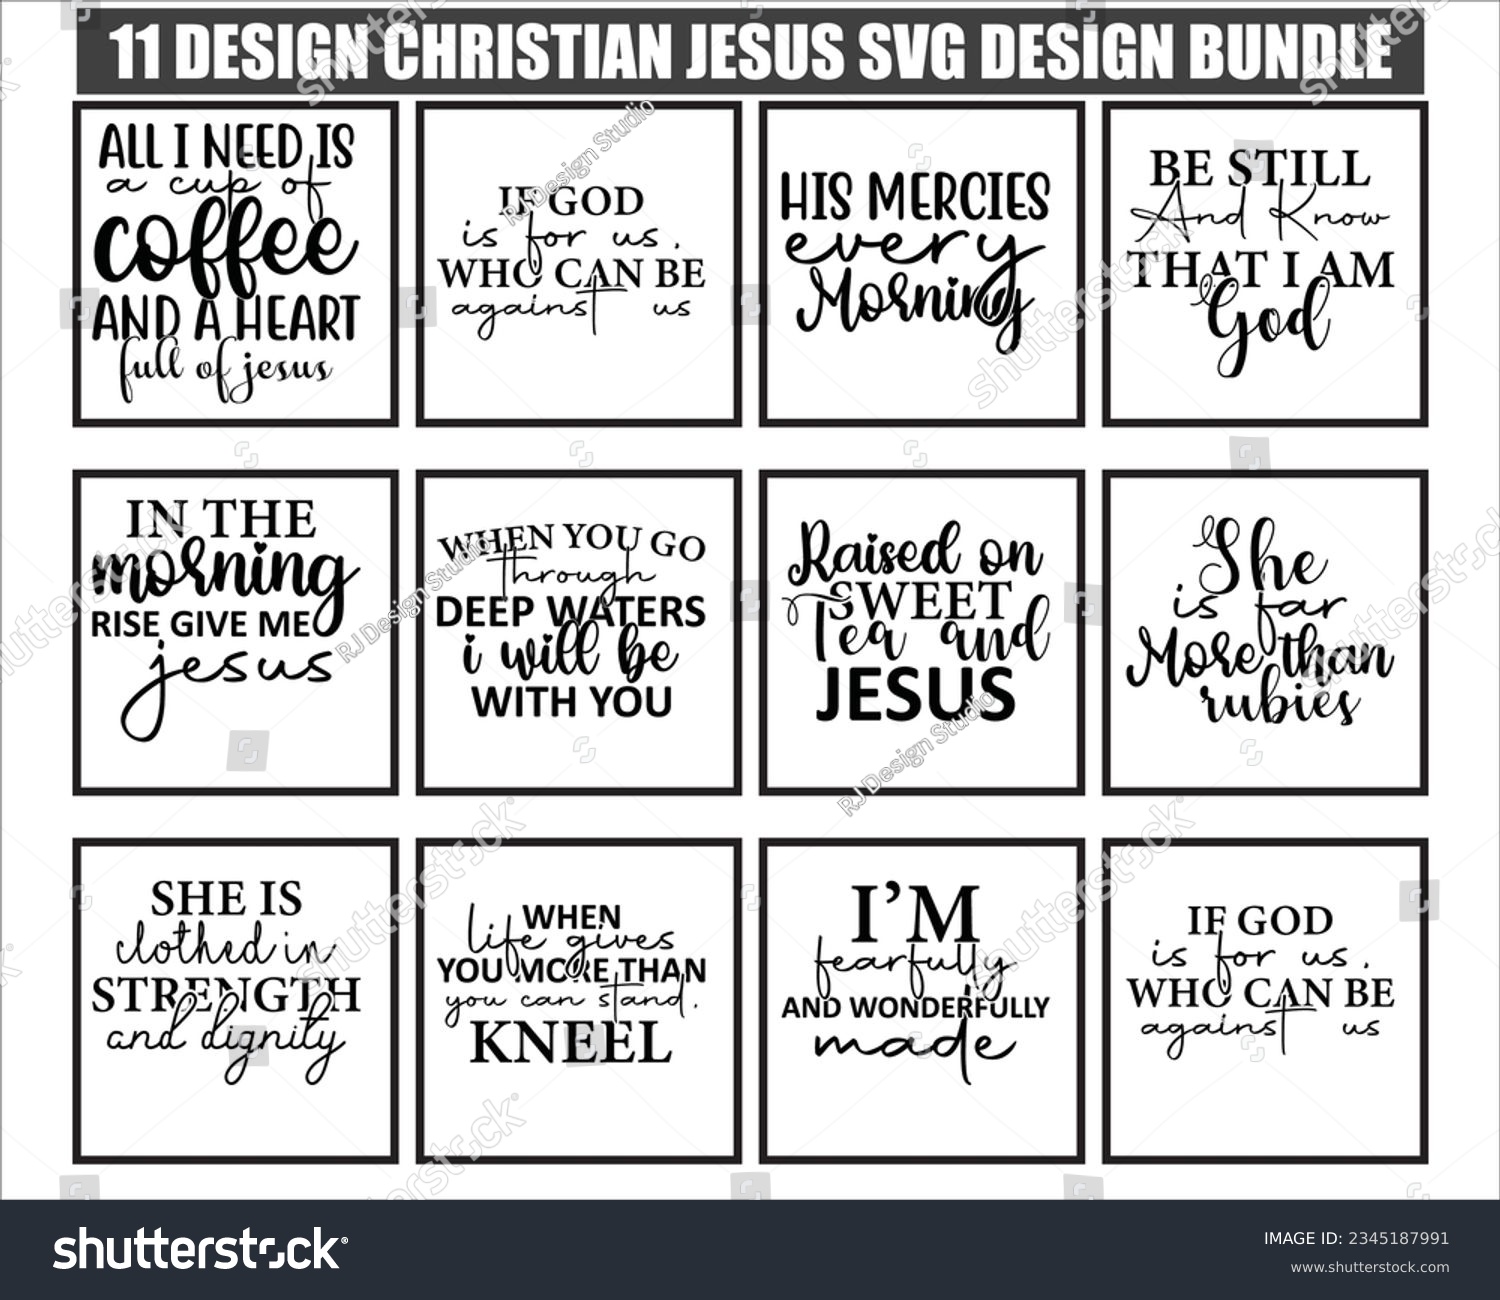 SVG of Christian Jesus SVG Design Bundle, Christian Jesus SVG Quotes , Free Bundle svg